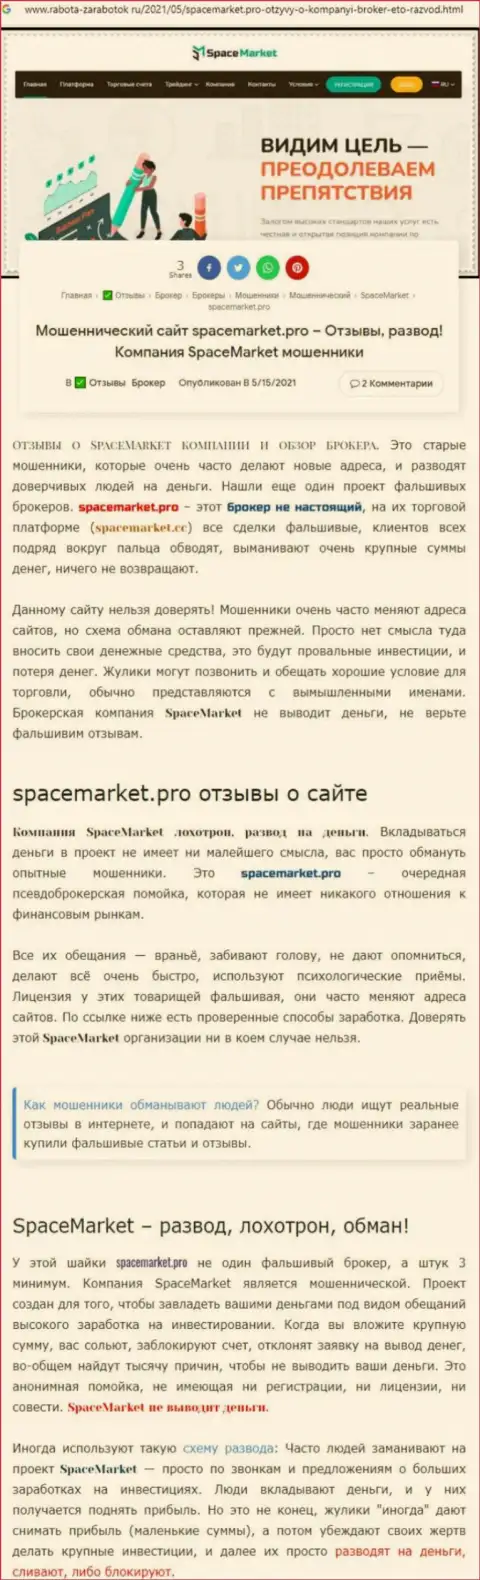 Мошенники SpaceMarket нагло дурачат - ОСТОРОЖНО (обзор проделок)